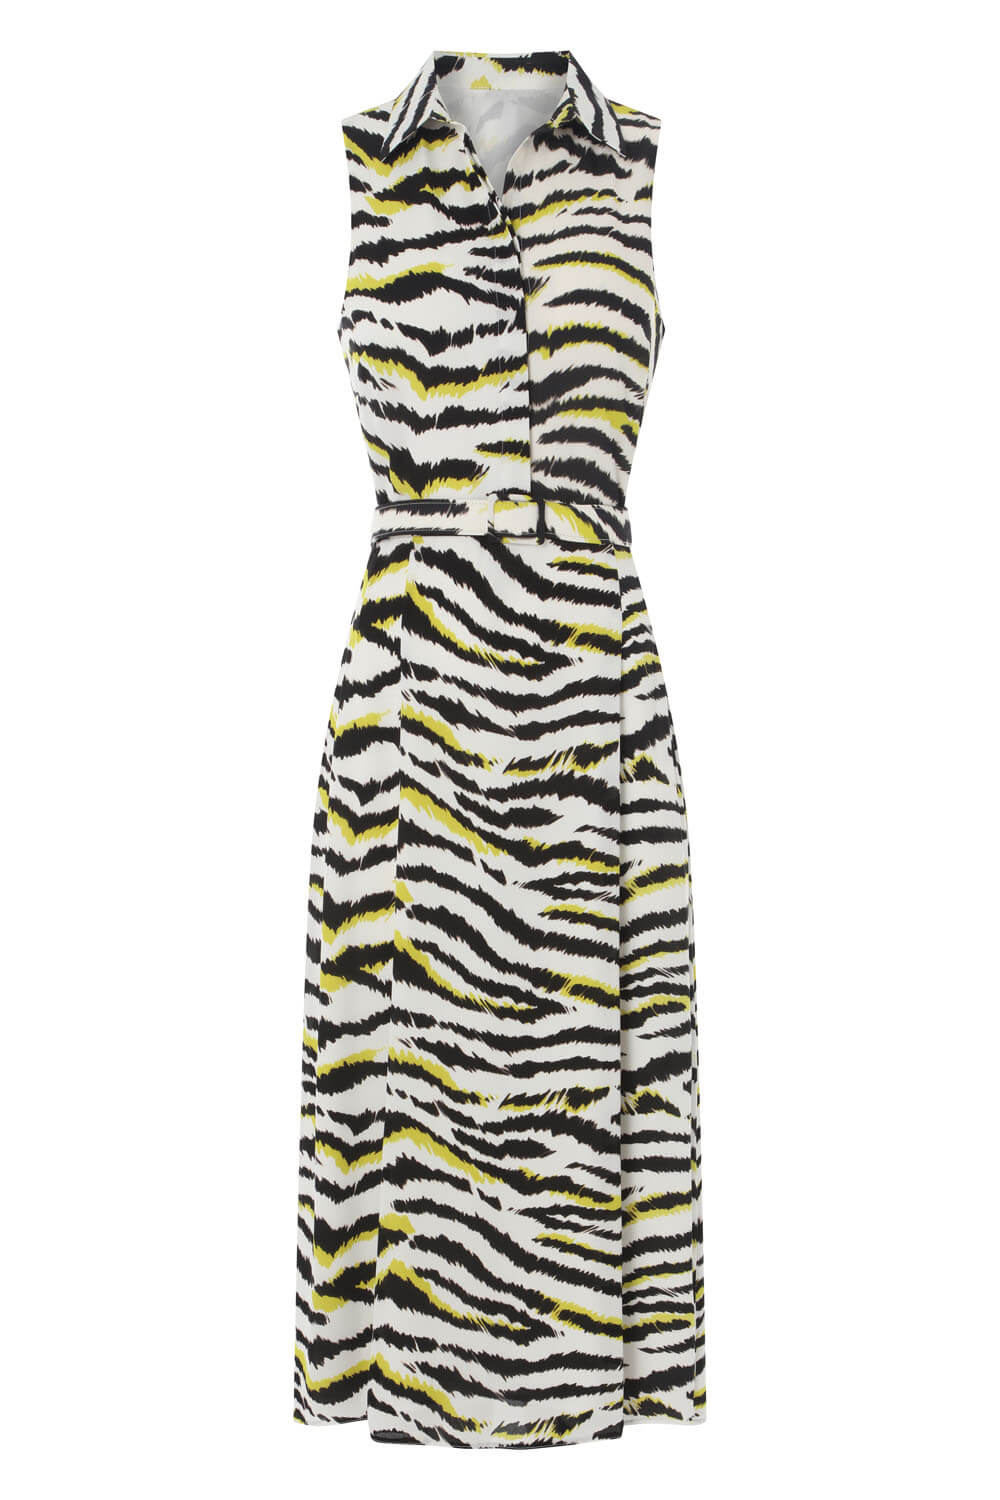 Lime Animal Print Collar Midi Dress, Image 5 of 5